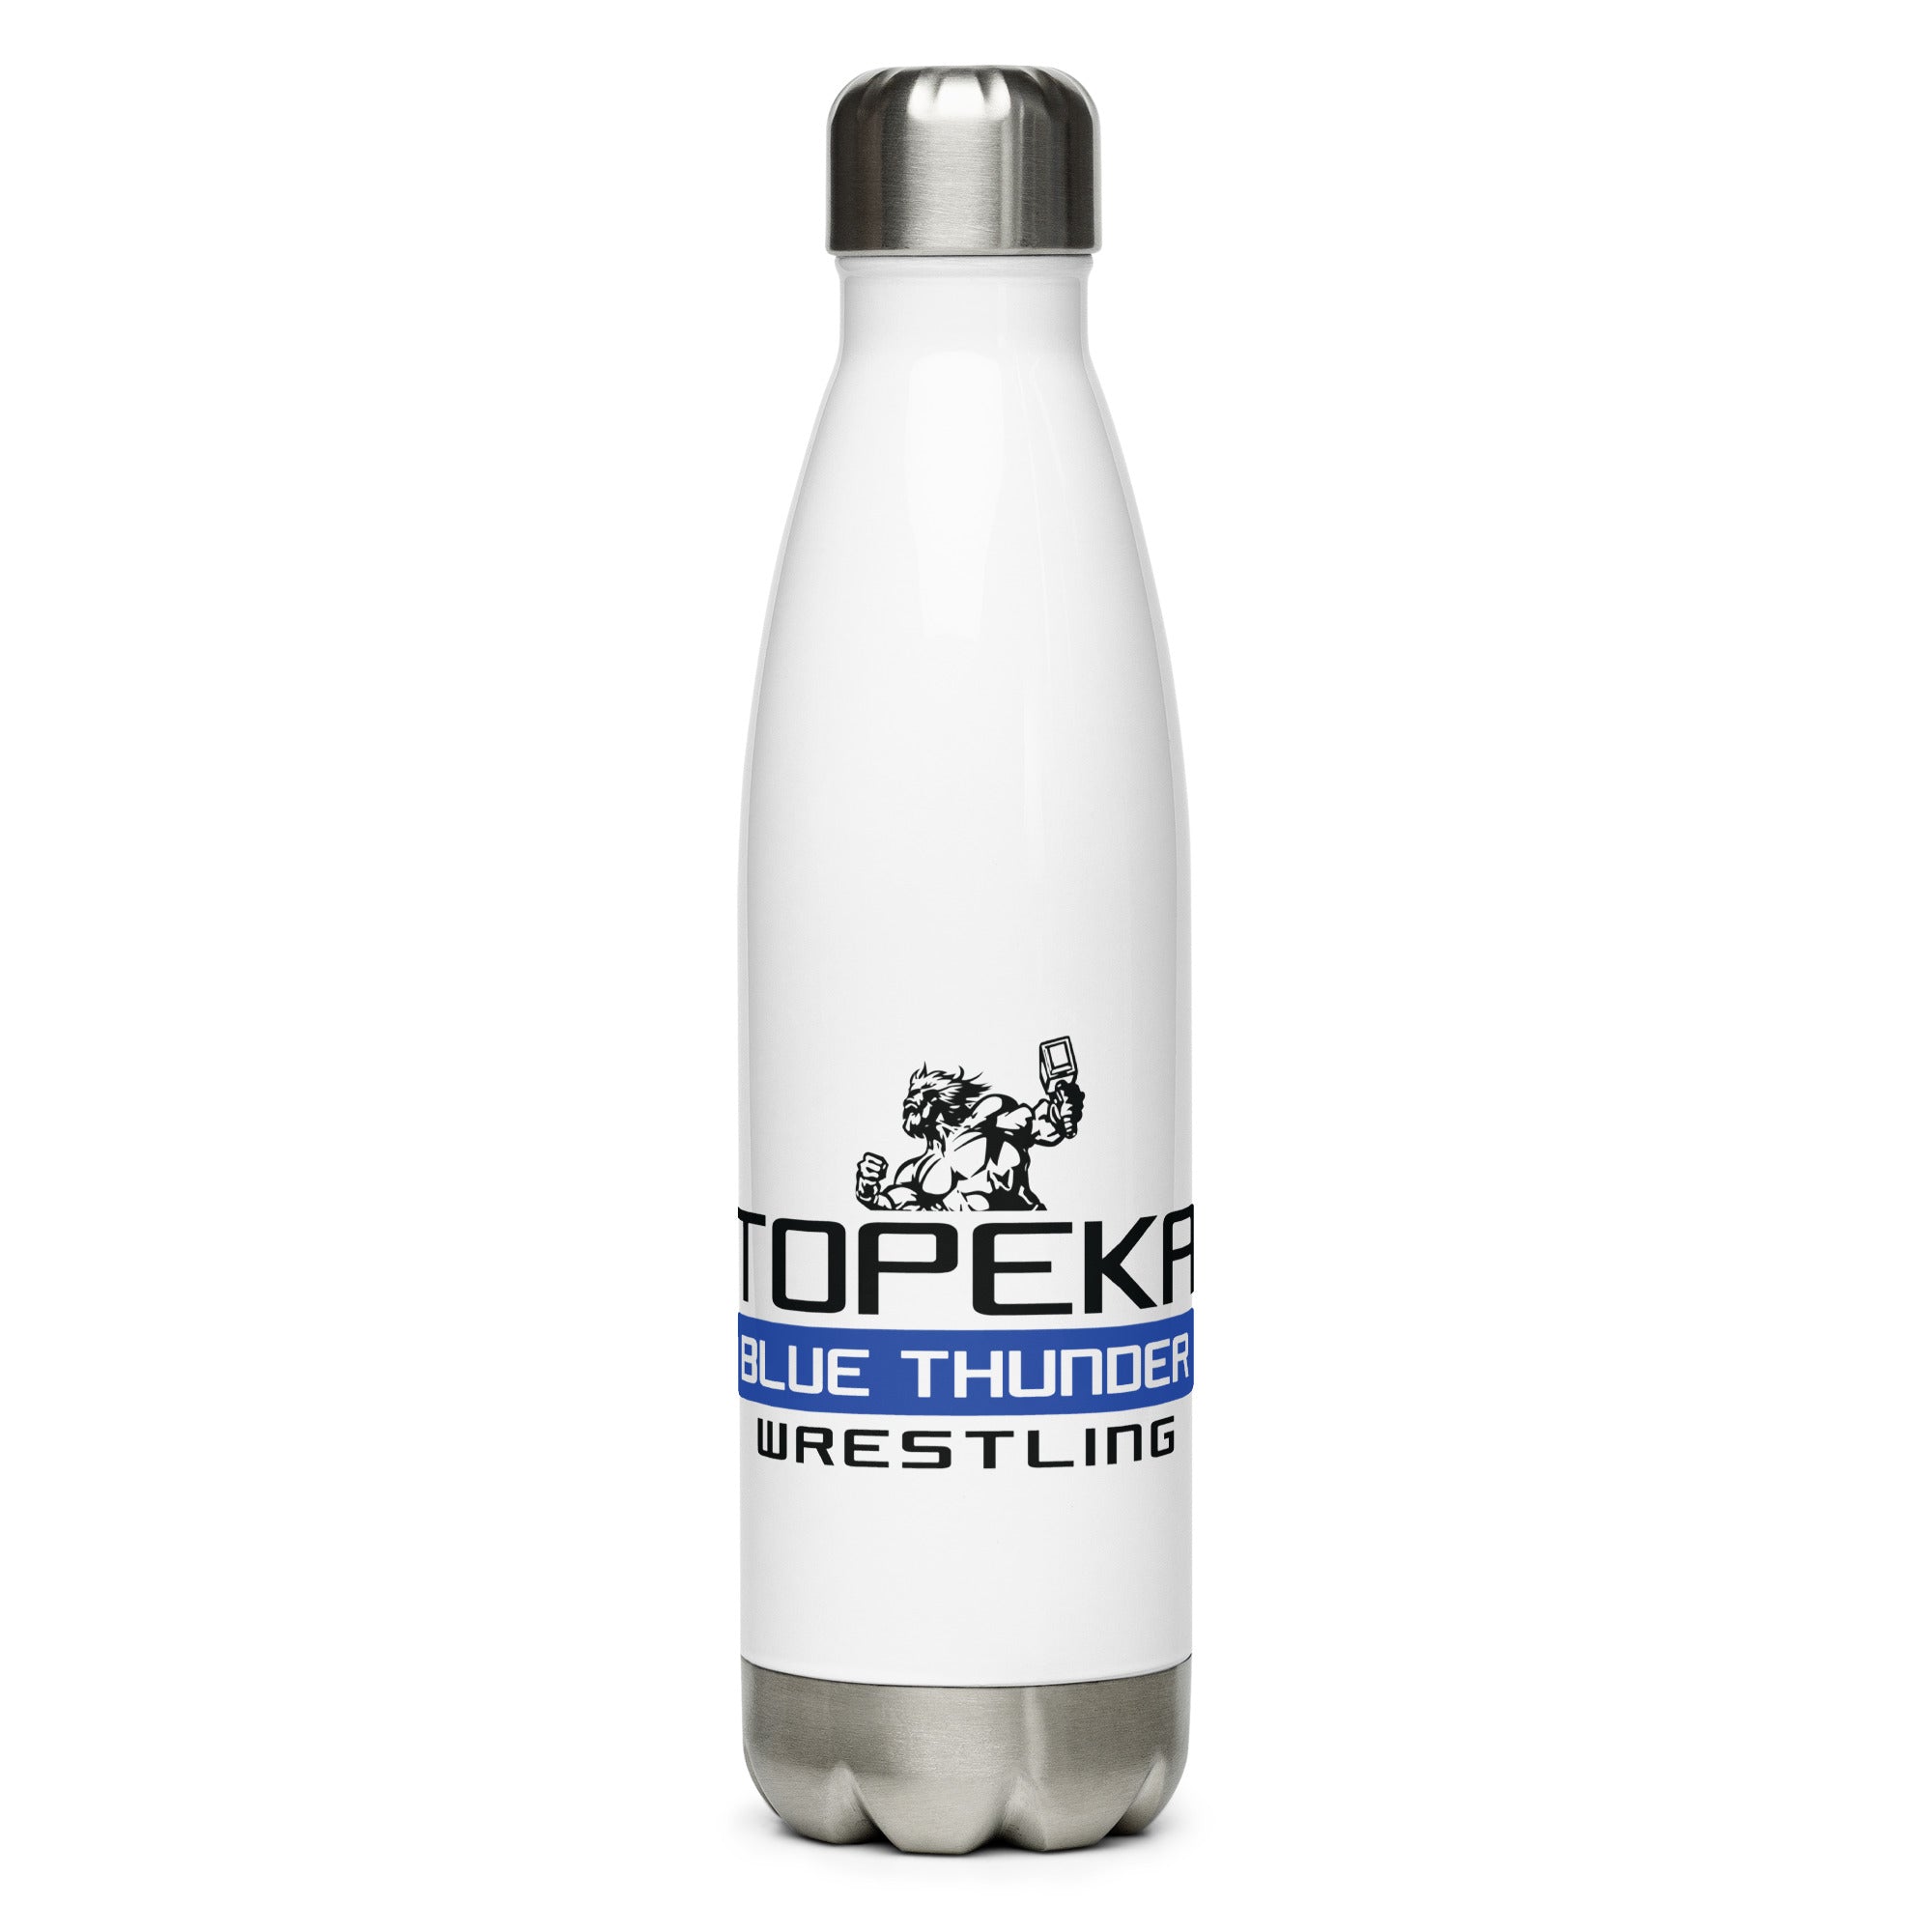 Topeka Blue Thunder Wrestling Stainless steel water bottle